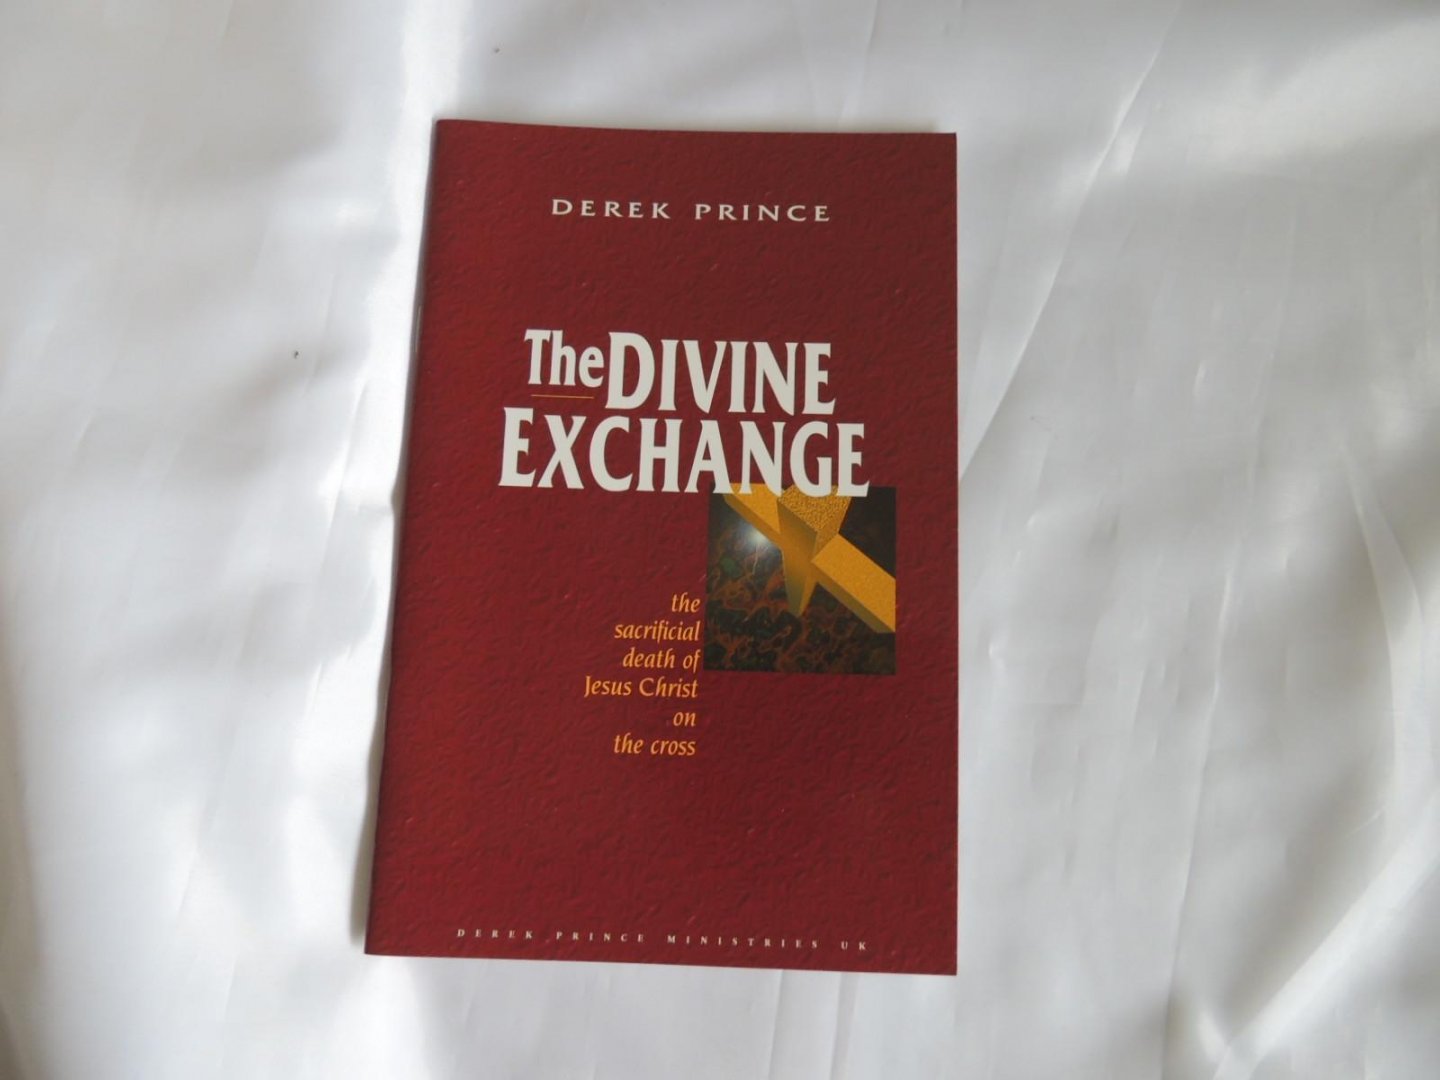 Prince, Derek - The Divine Exchange